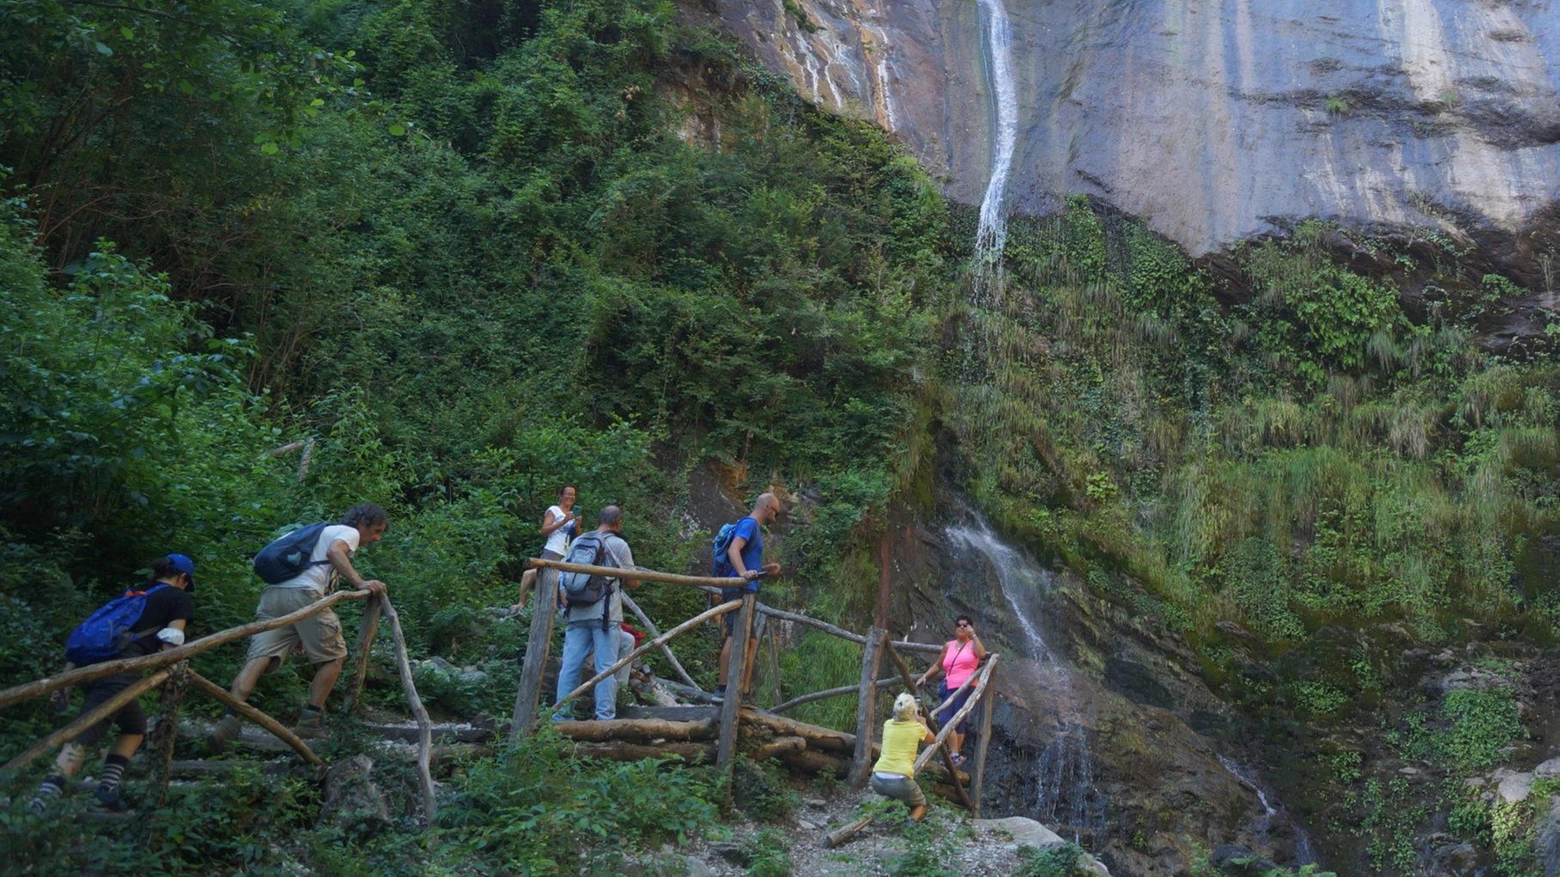 Le cascate dell'Acquapendente nella Versilia offrono uno spettacolo naturale maestoso e suggestivo, immerso nella pace della Foresta degli Gnomi. Un percorso tra storia e natura conduce a una cascata di 20 metri, regalando un'esperienza unica di armonia e bellezza.